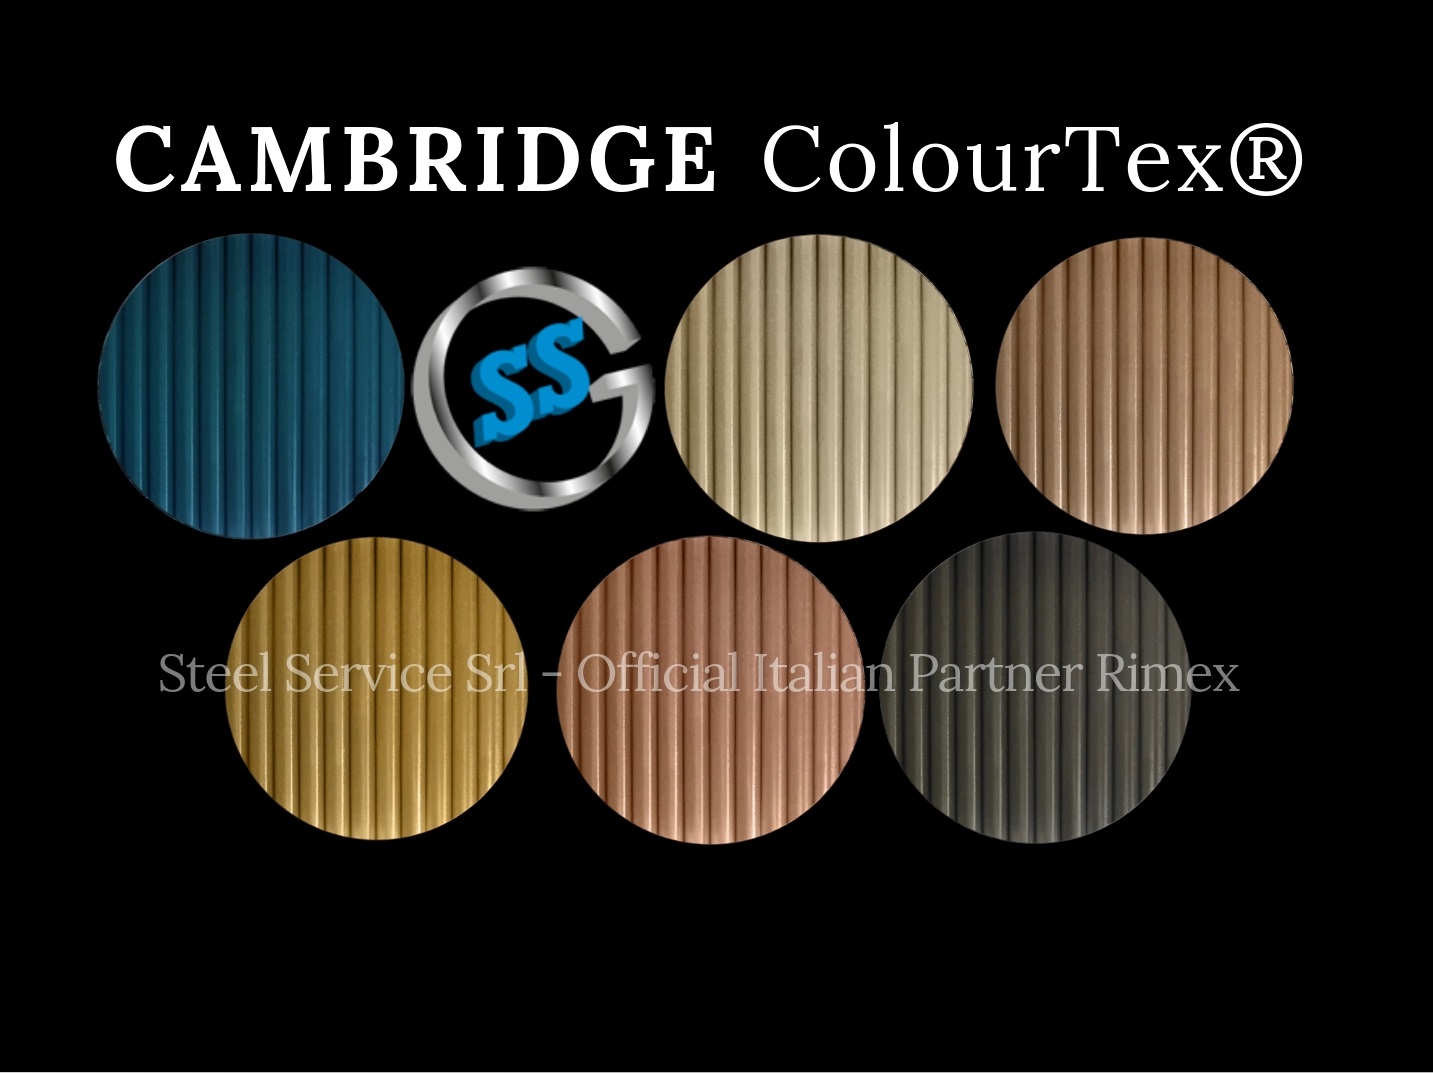 Lamiere bugnate CAMBRIDGE colorate, Palette varianti elettro-colorate inox ColourTex delle lamiere inox CAMBRIDGE, inox rigidizzato galvanico CAMBRIDGE, inox millerighe elettro-colorato